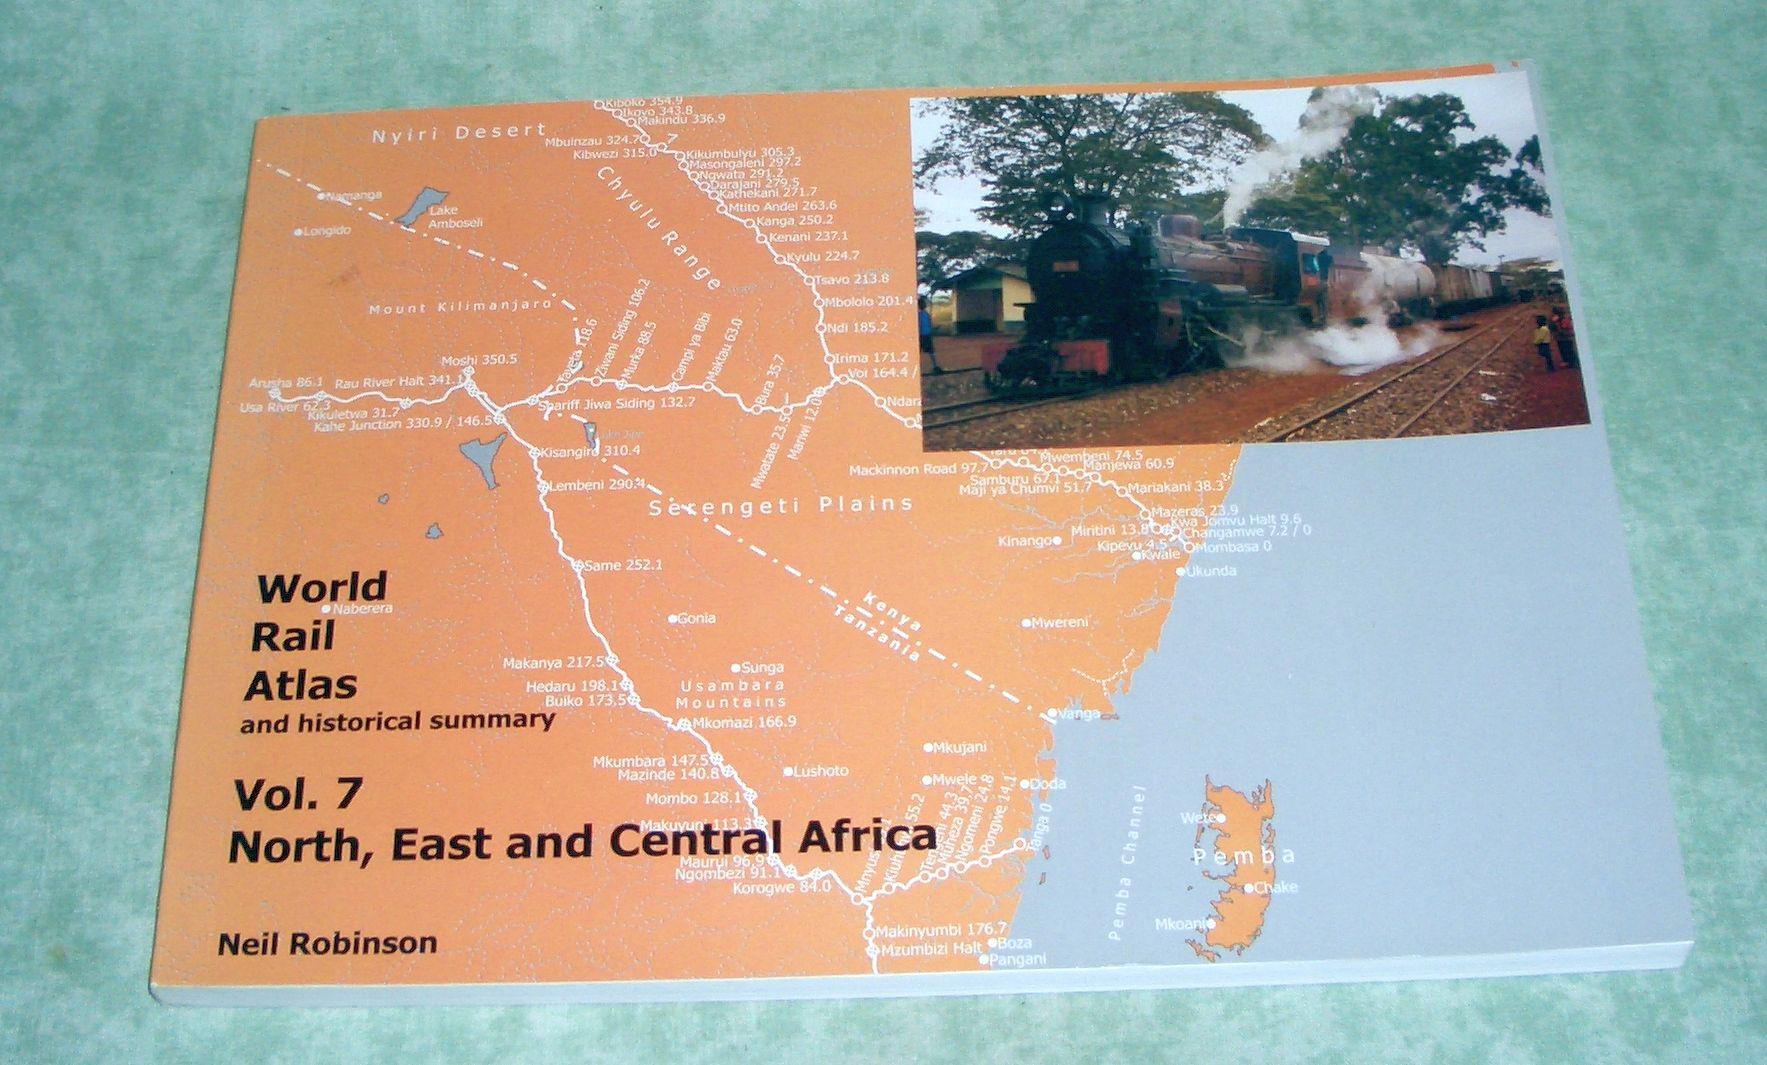 World rail atlas and historical summary. Vol. 7. North, east and central Africa. - Eisenbahn Robinson, Neil.